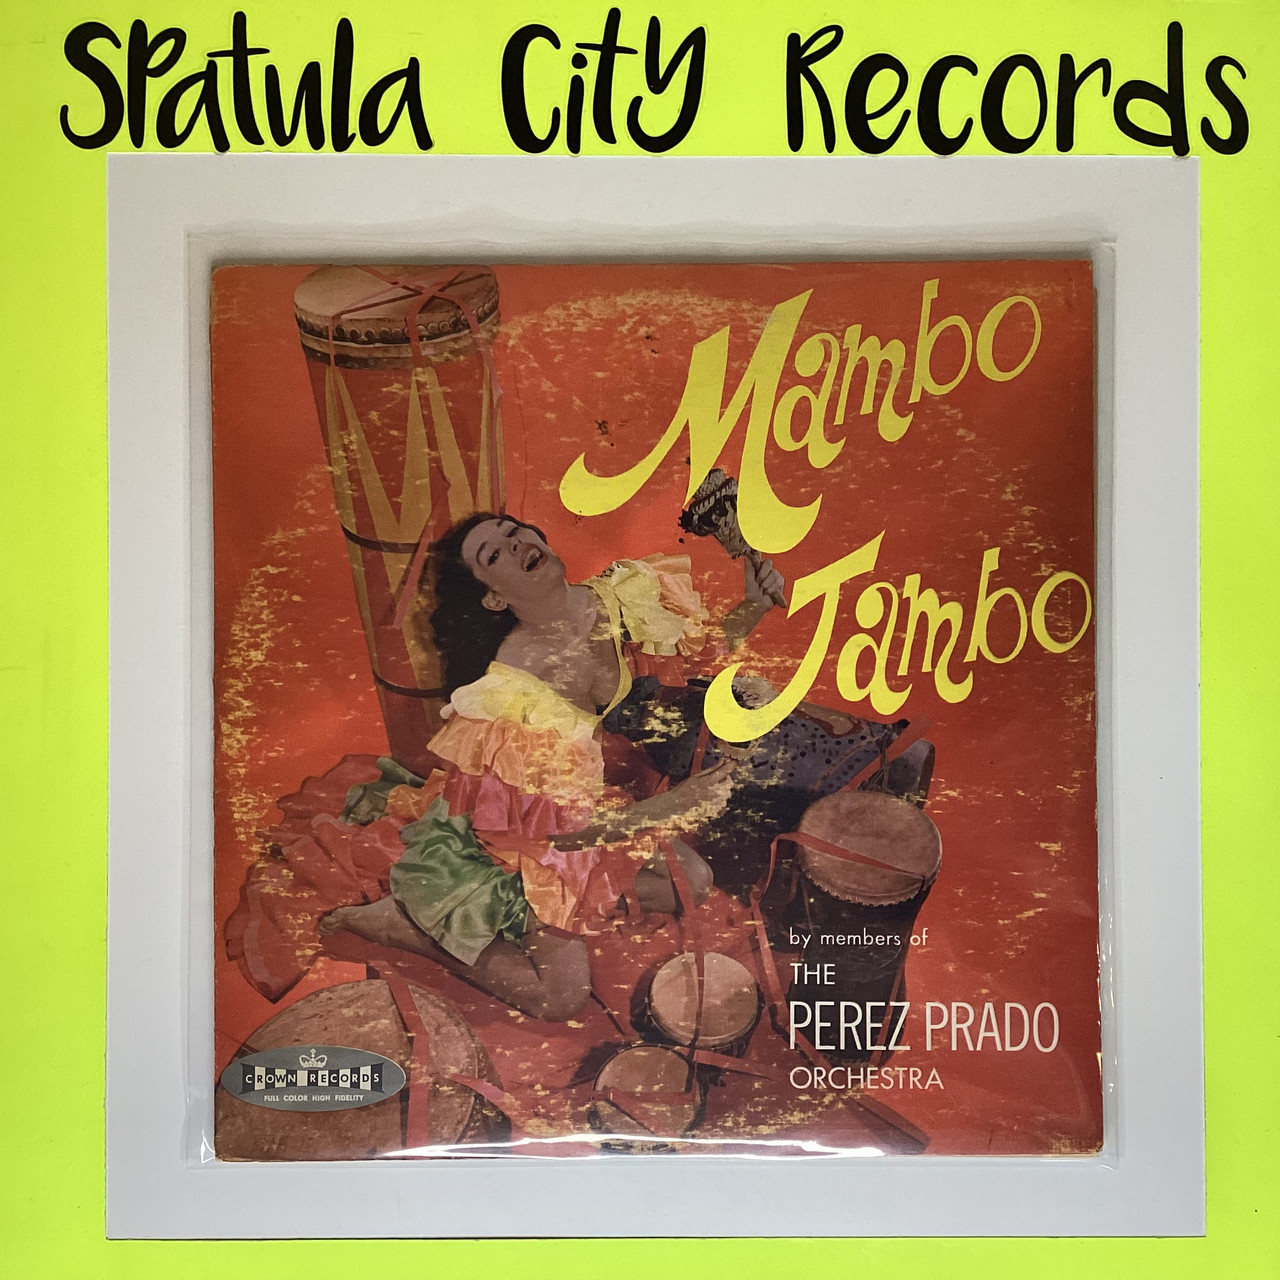 Perez Prado Greatest Mambos YELLOW Vinyl LP Que Rico El Mambo Corazon De  Melon